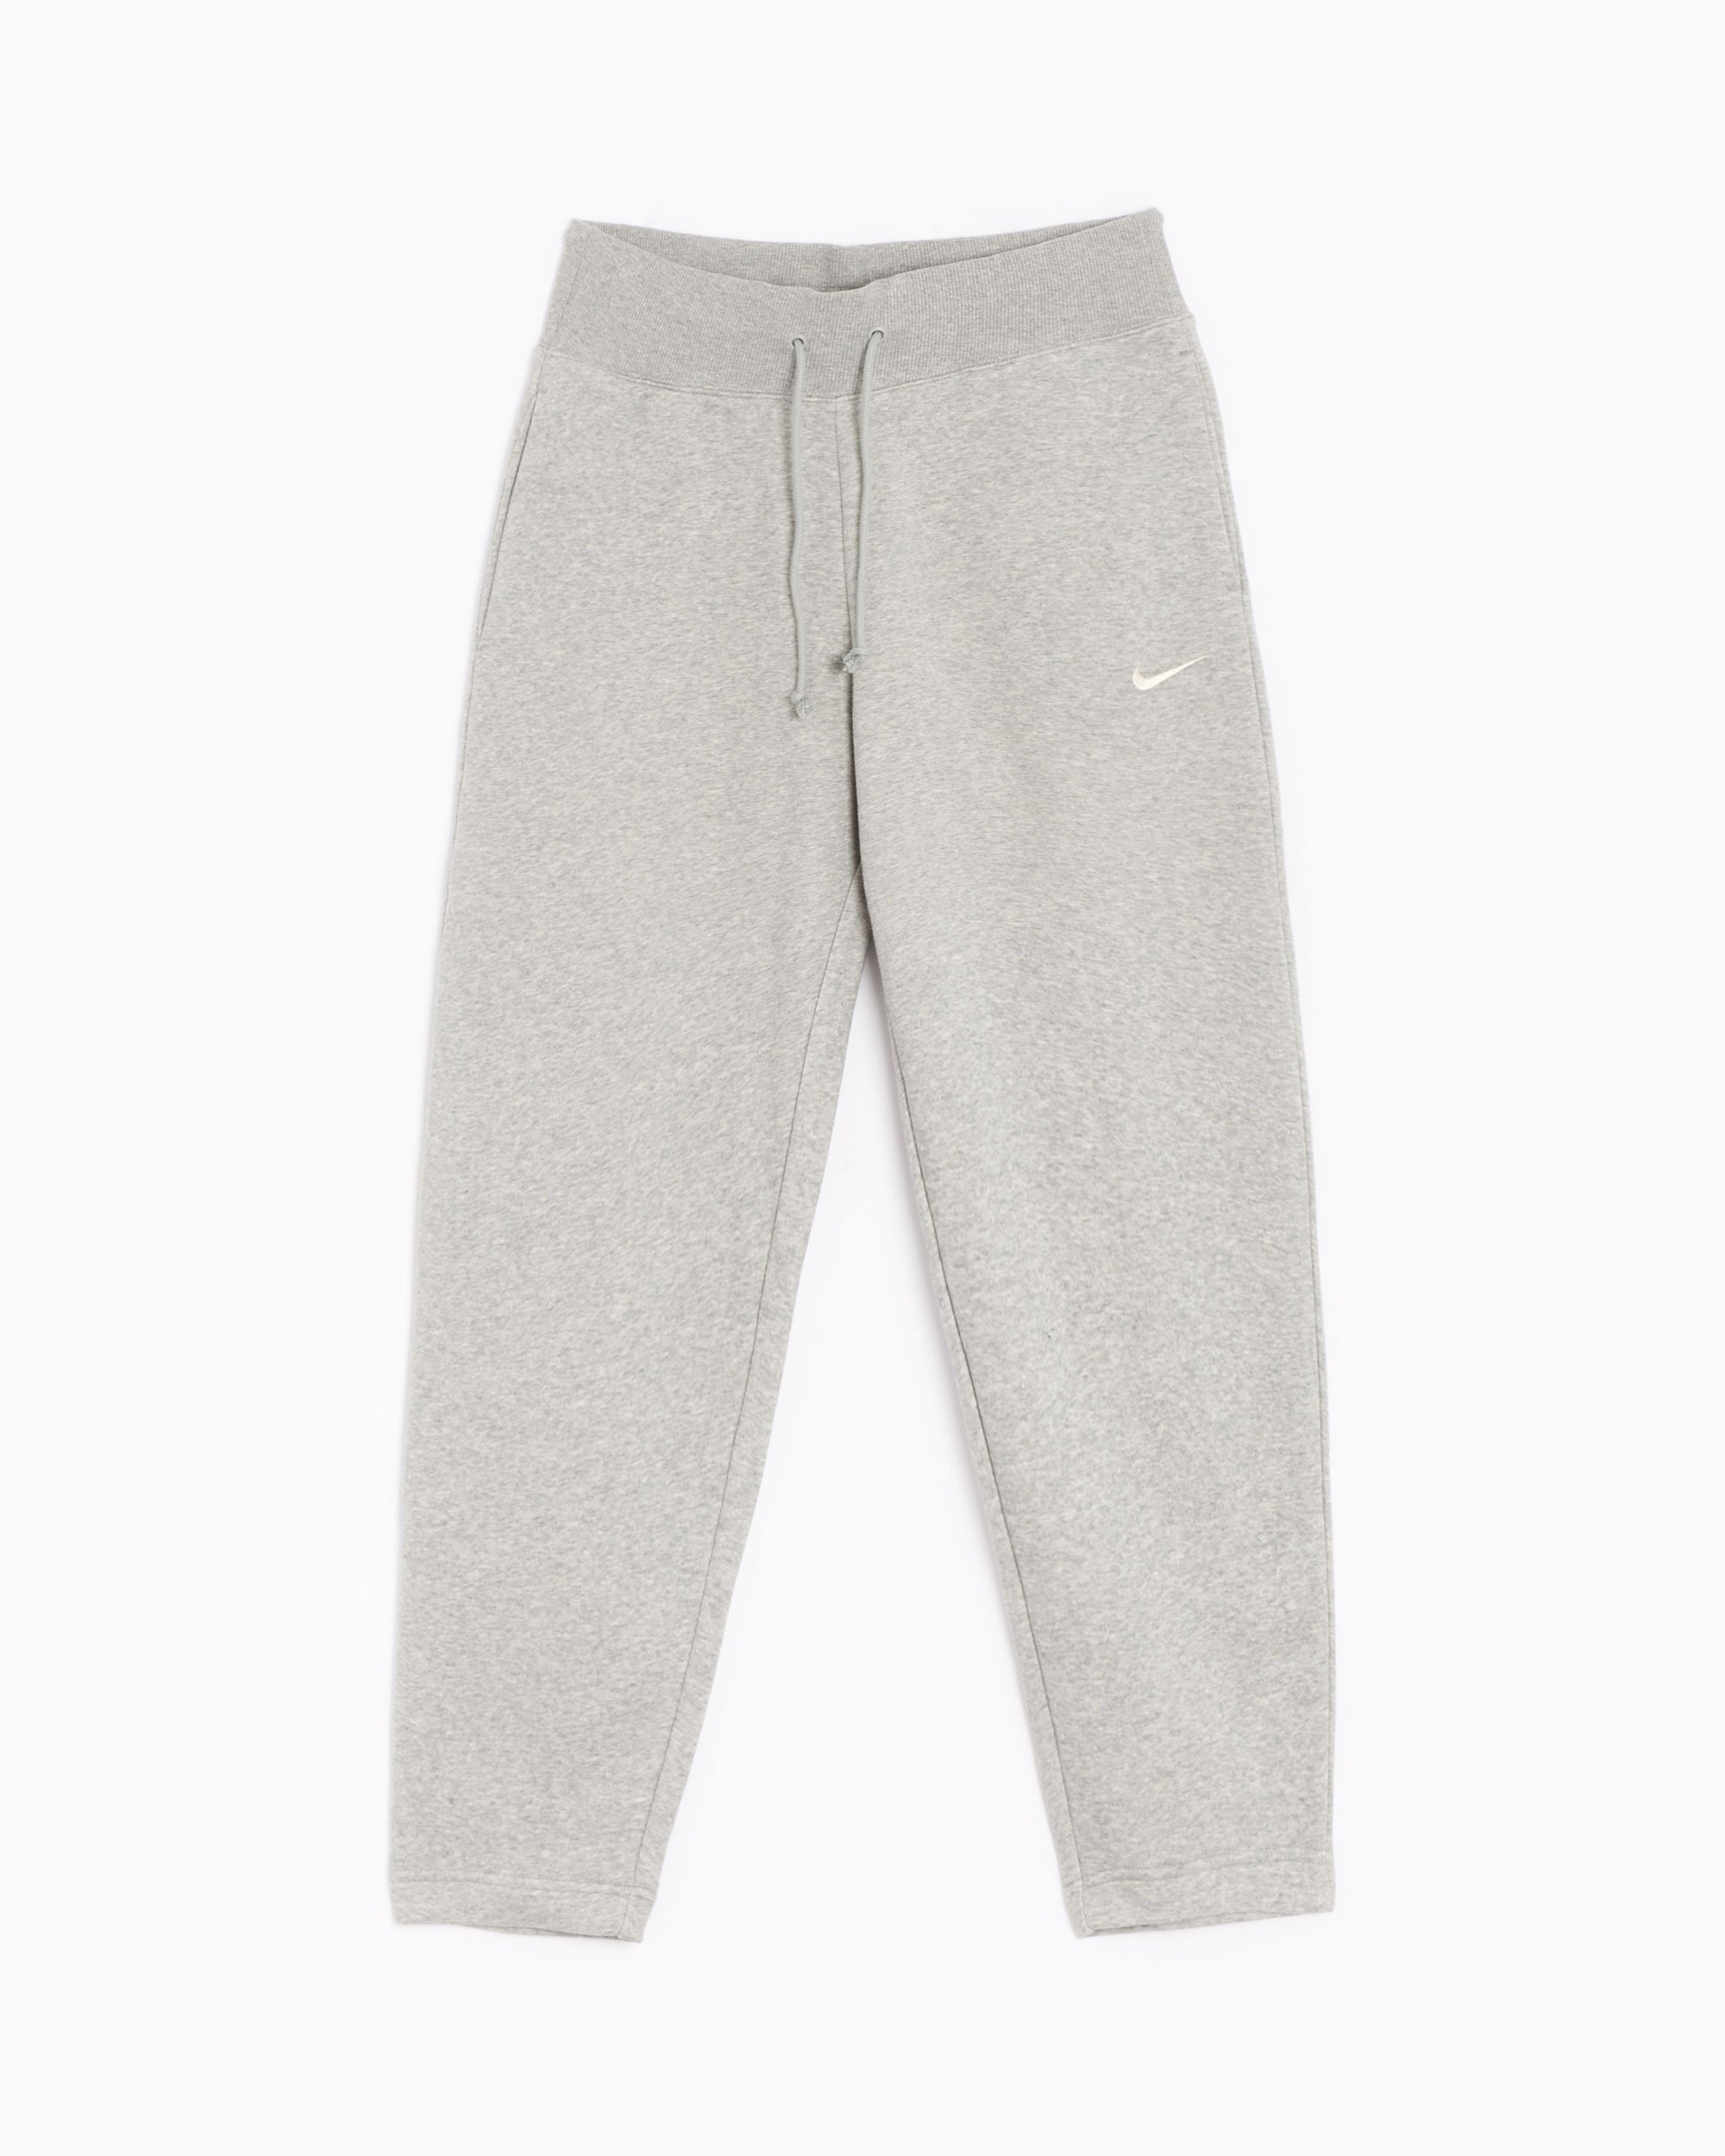 Nike Sportswear Phoenix Women's Fleece Sweatpants Gray Buy Online FOOTDISTRICT